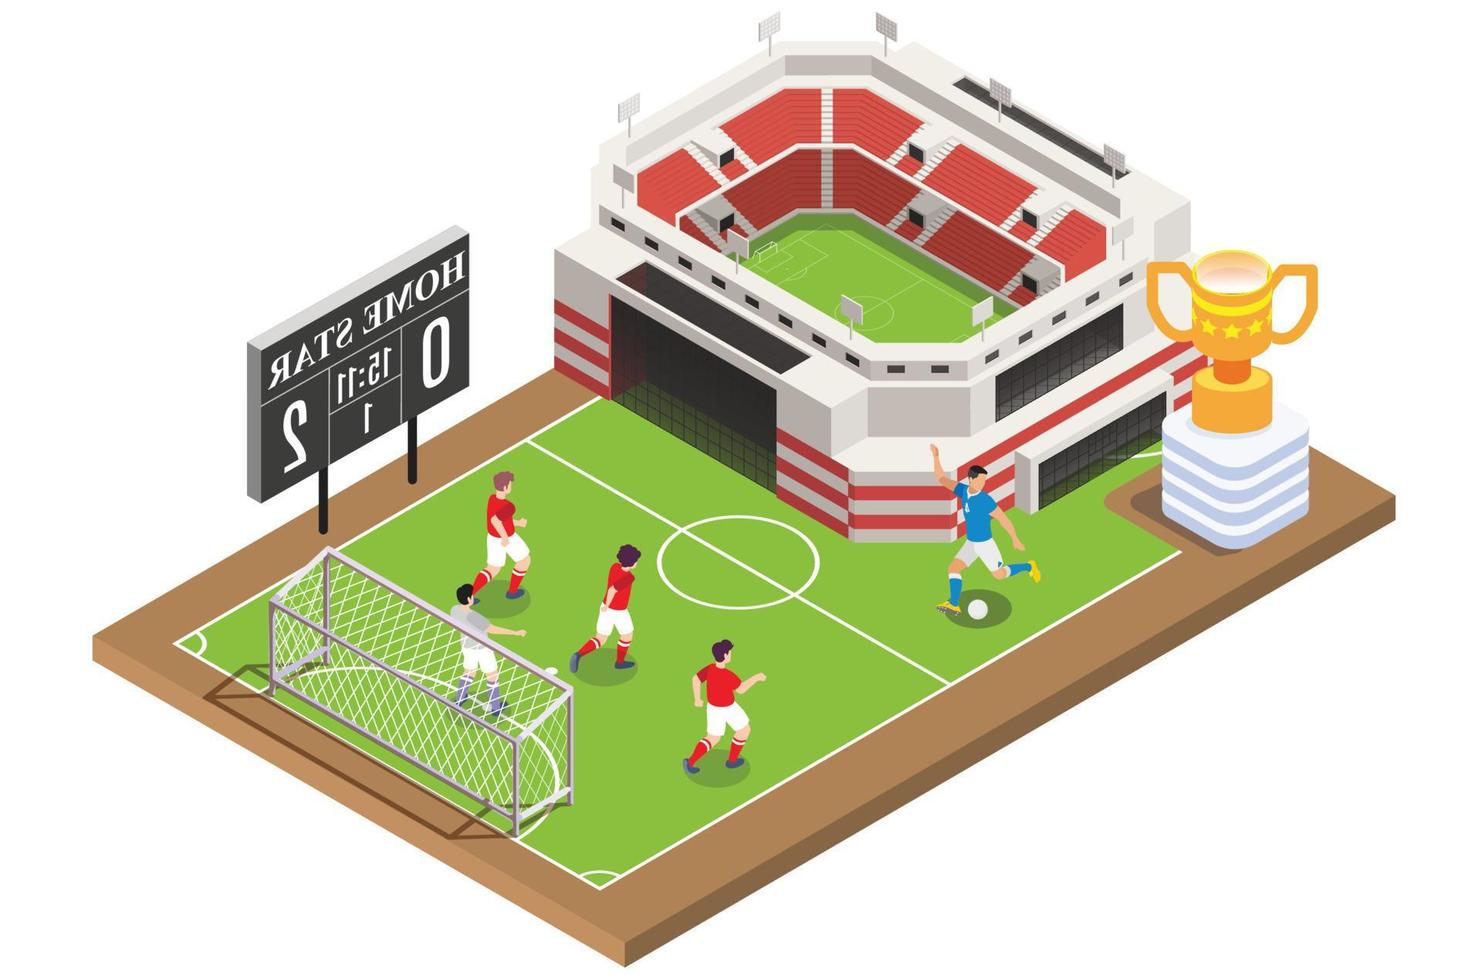 moderno isométrica En Vivo fútbol torneo con calles y estadios ilustración, adecuado para diagramas, infografía, libro ilustración, juego activo, y otro gráfico relacionado bienes vector